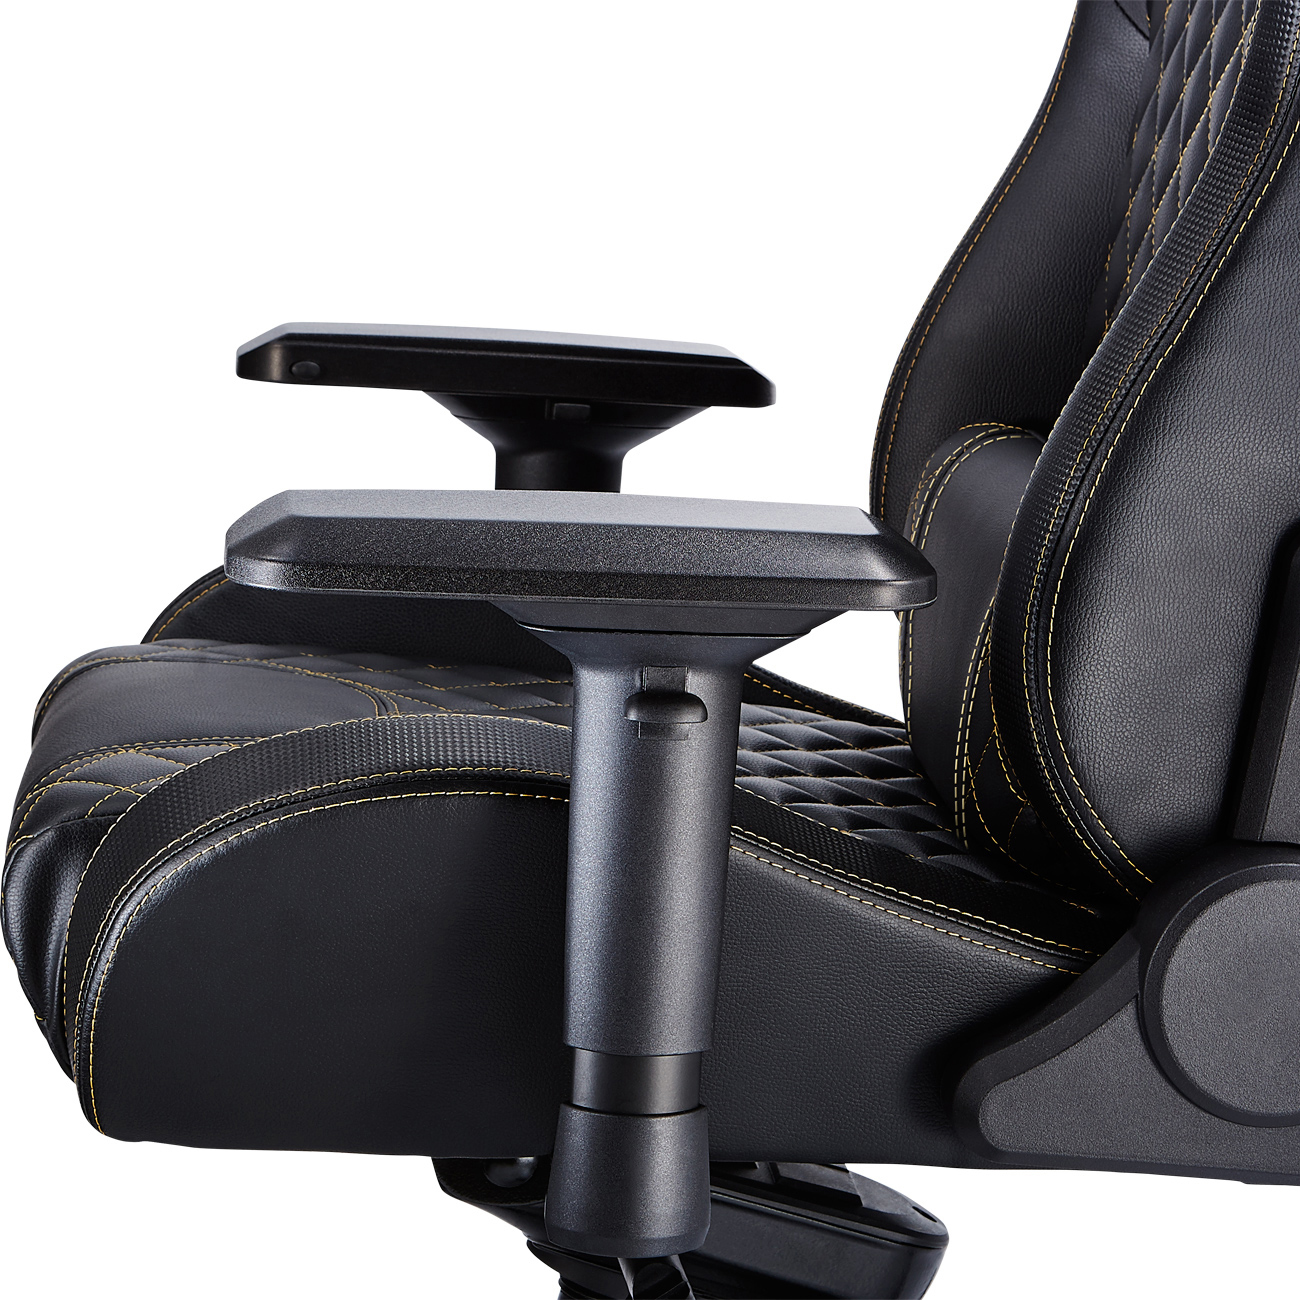 Zone X Chair Stuhl, Schwarz/Gold TESORO Gaming Gaming